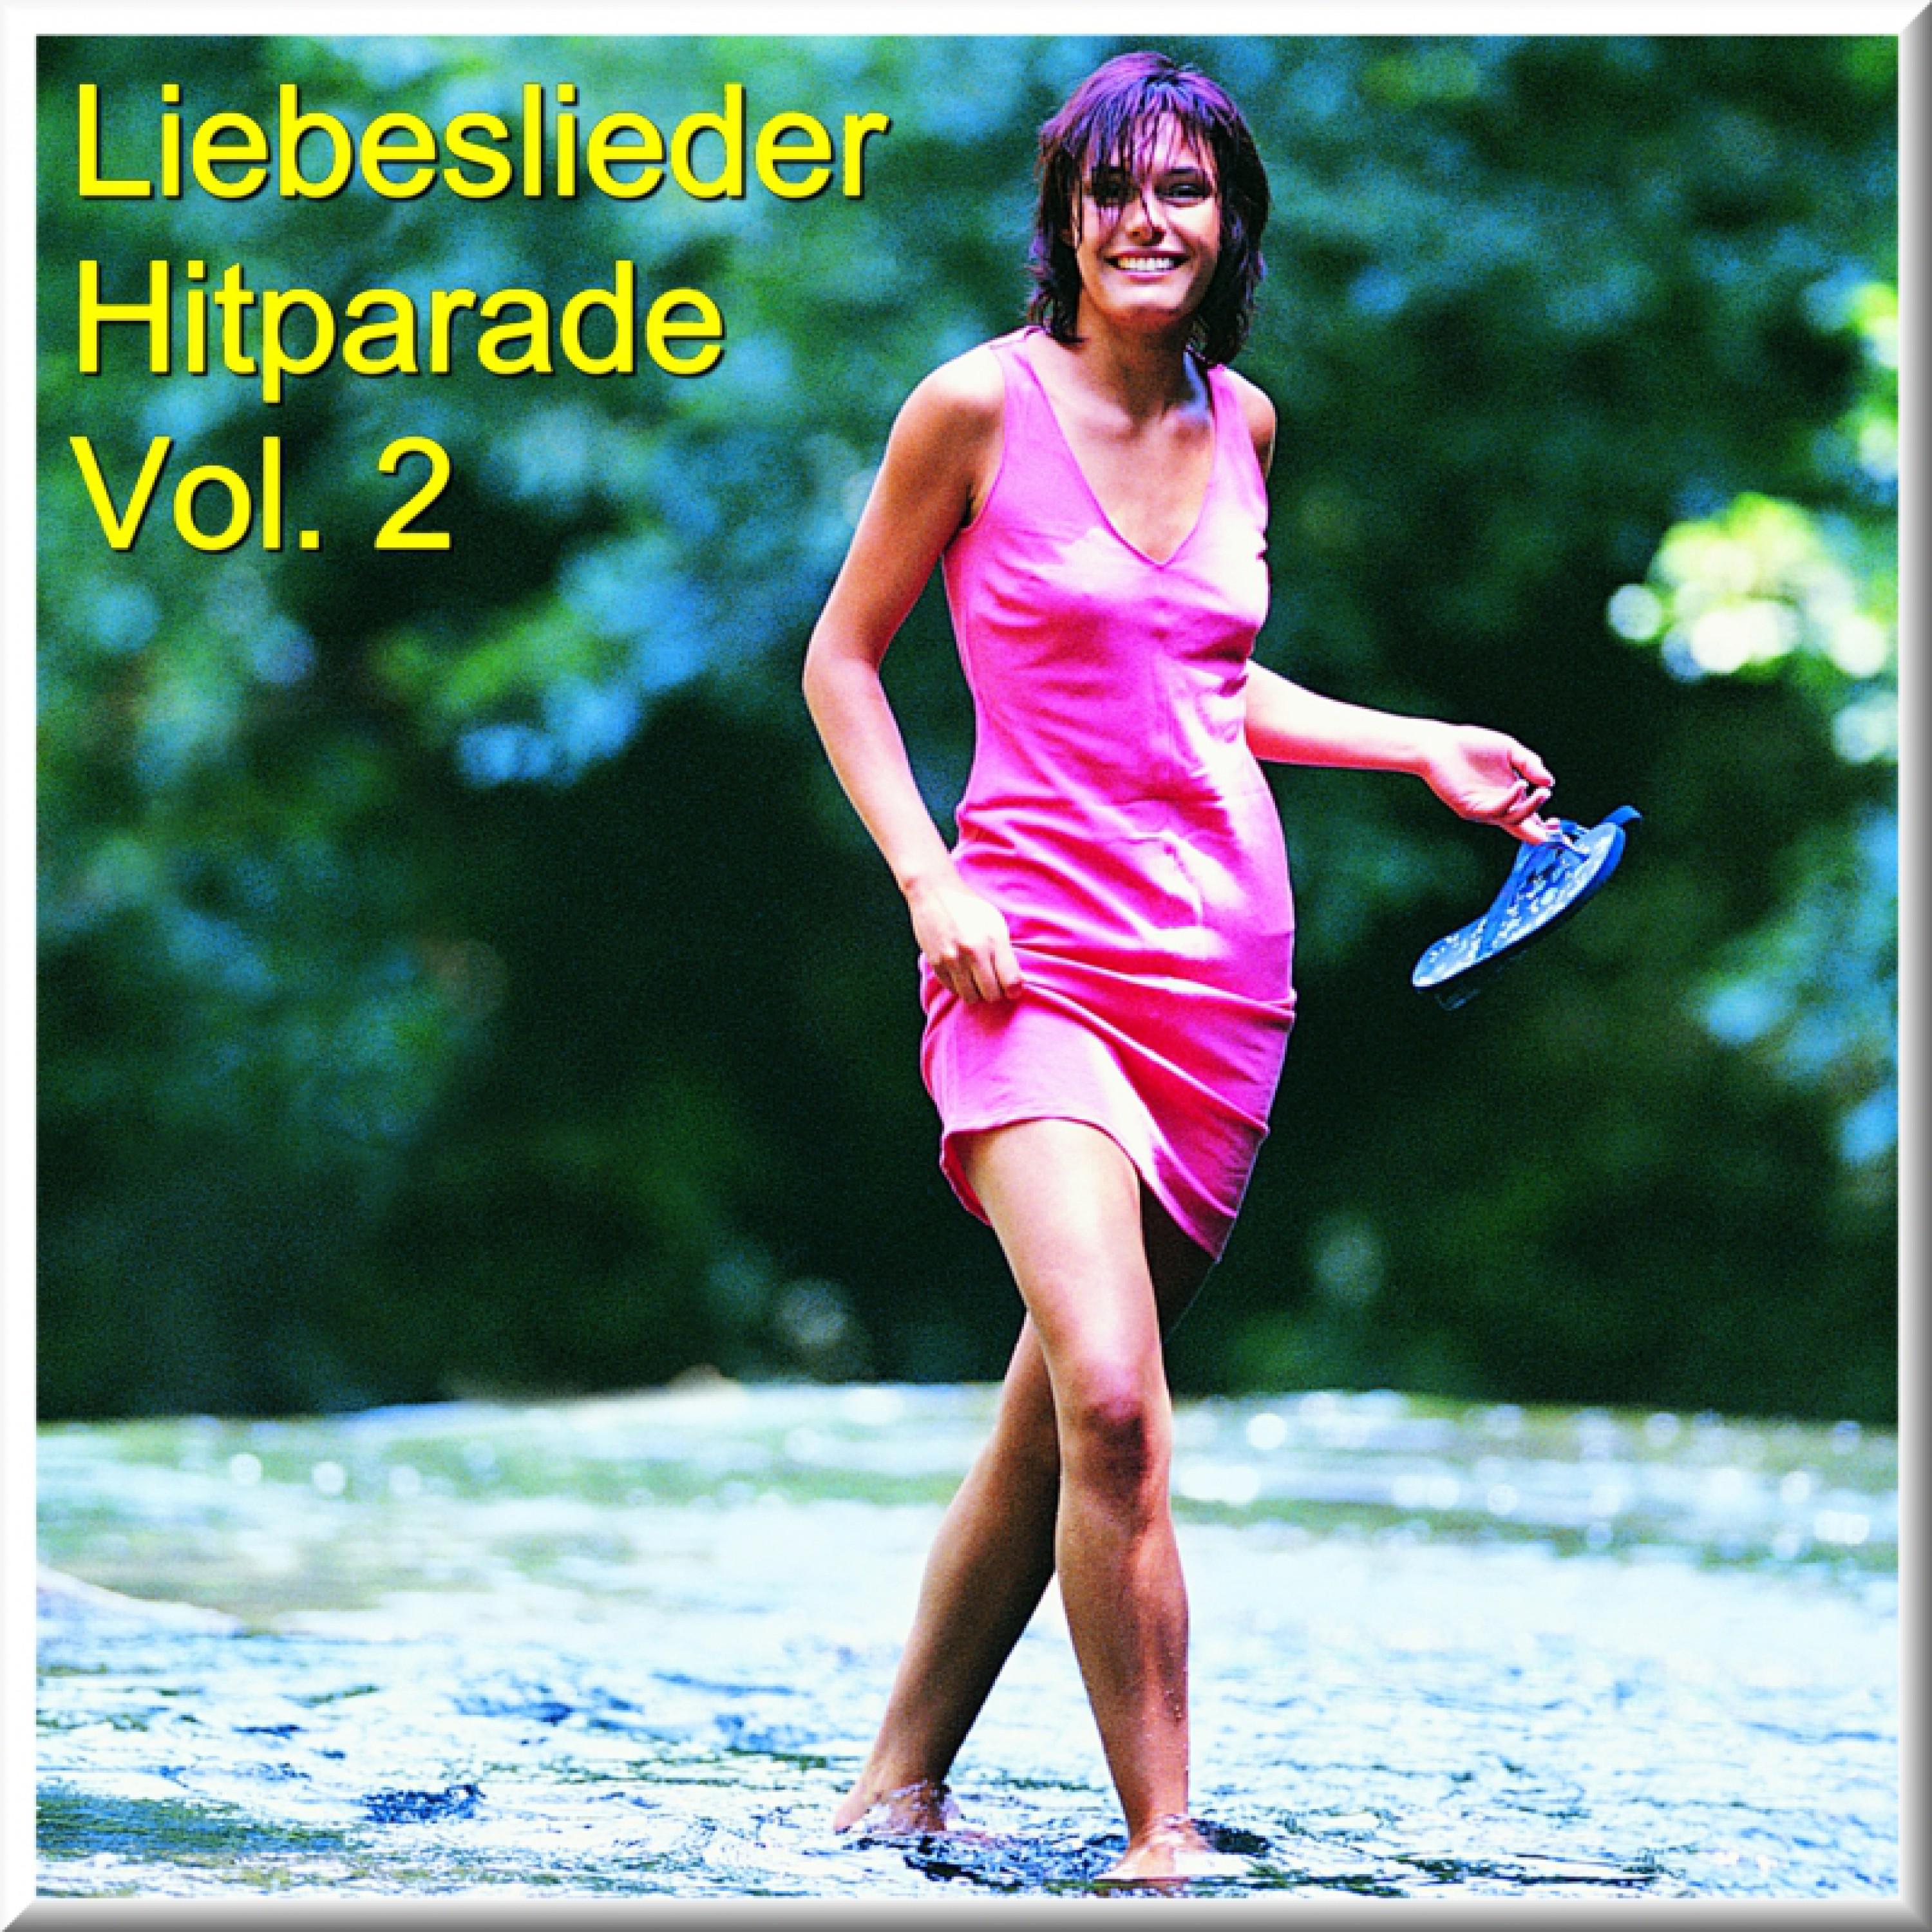 Liebeslieder Hitparade Vol. 2